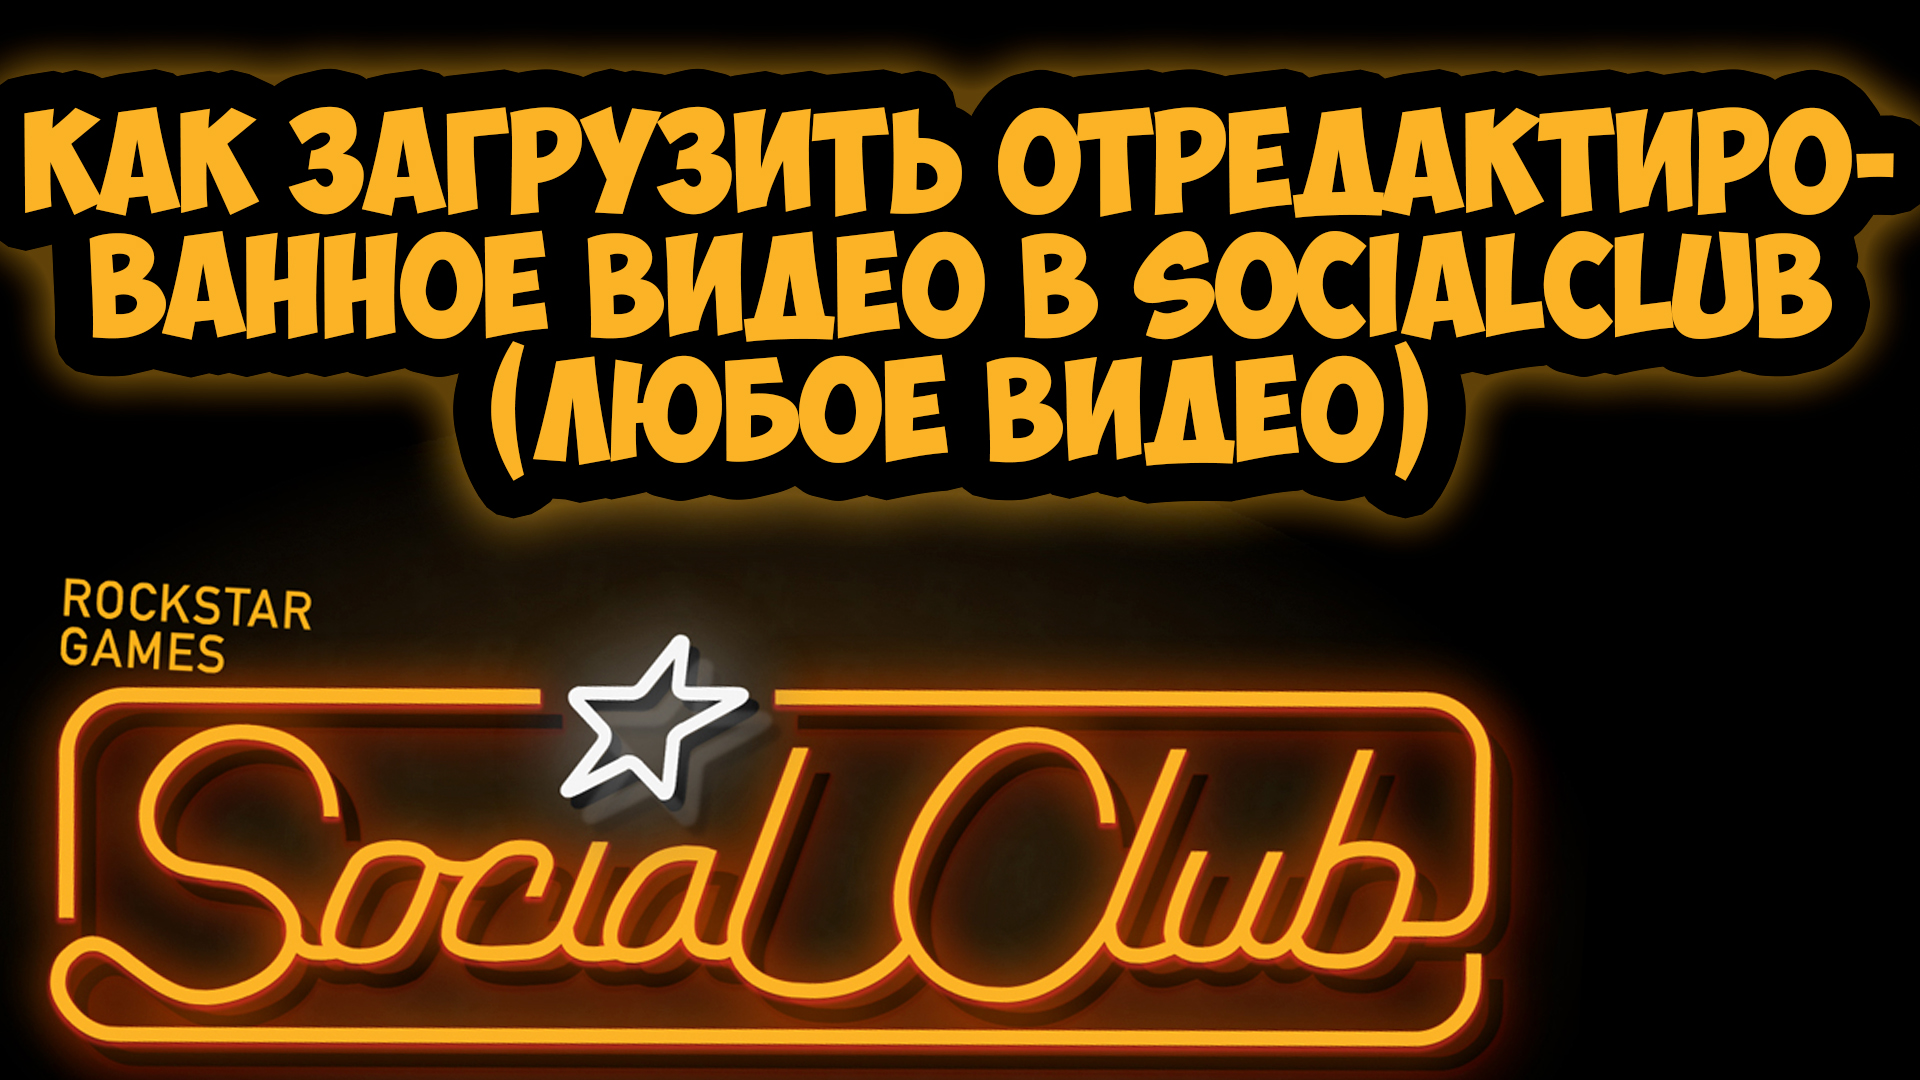 инициализация social club гта 5 фото 34